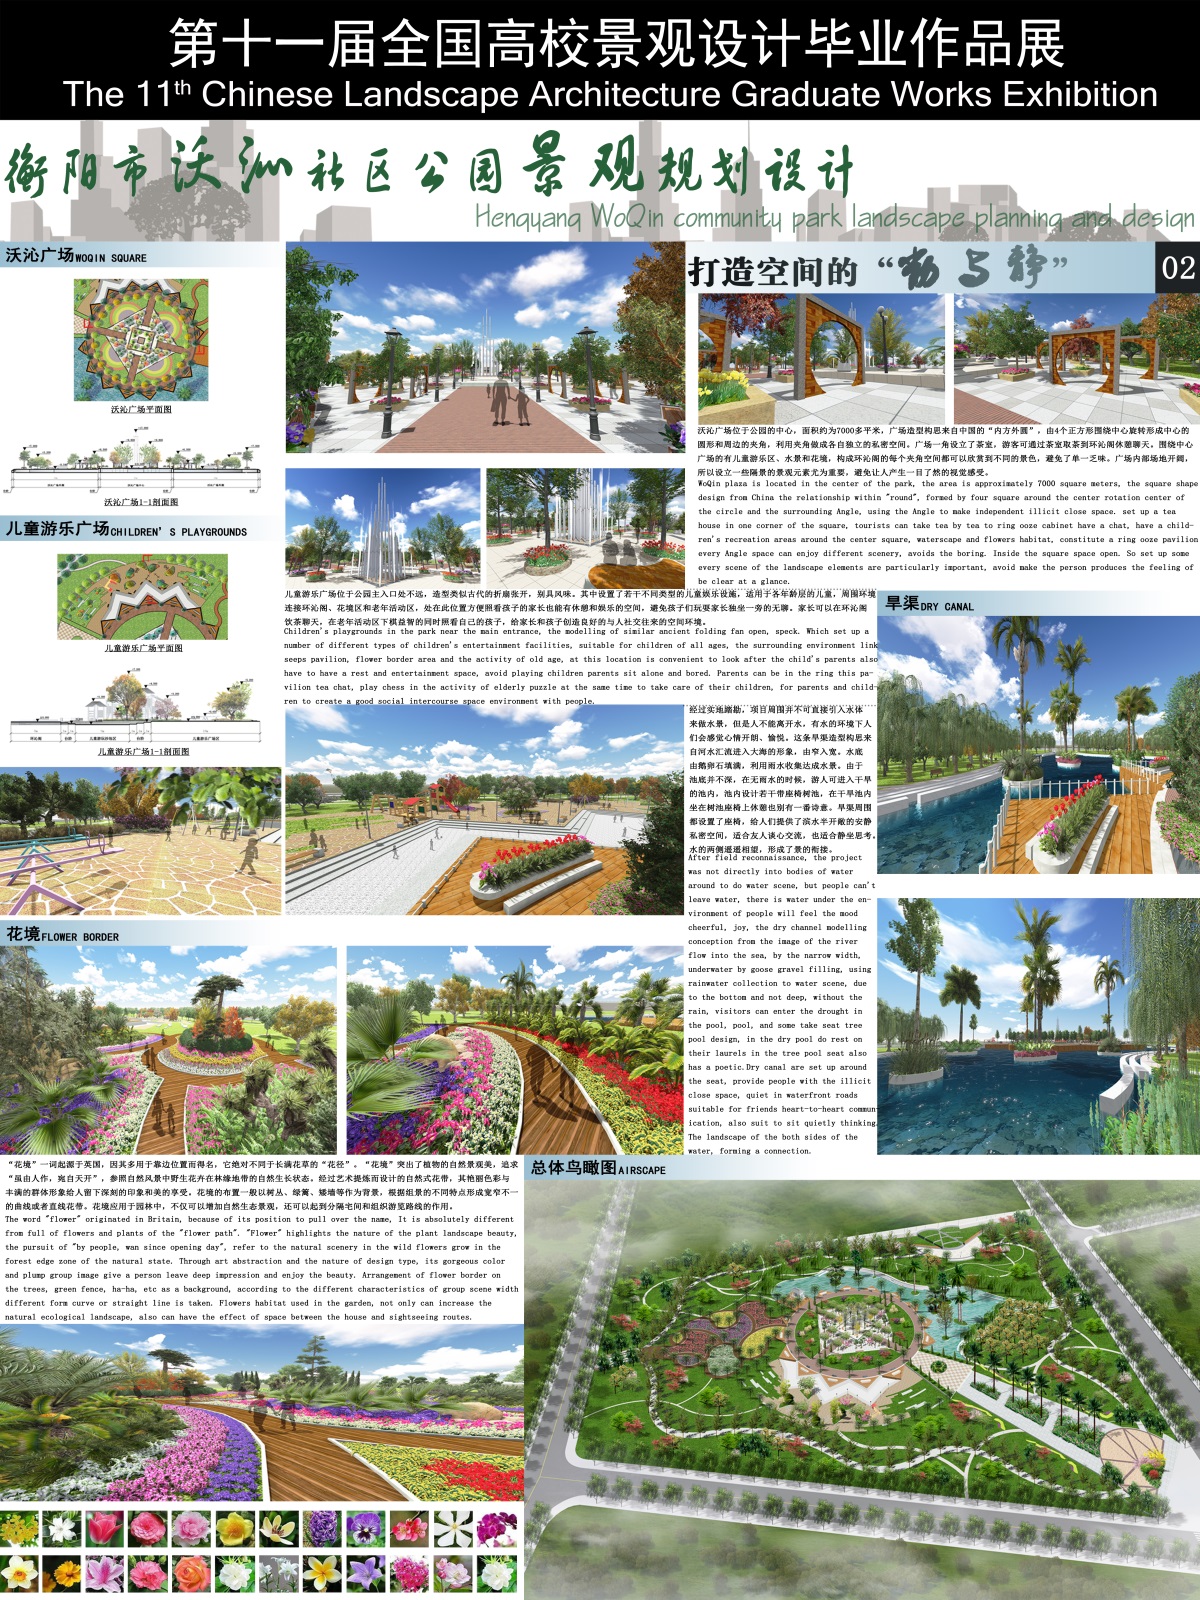 衡阳市沃沁社区公园景观规划设计-1